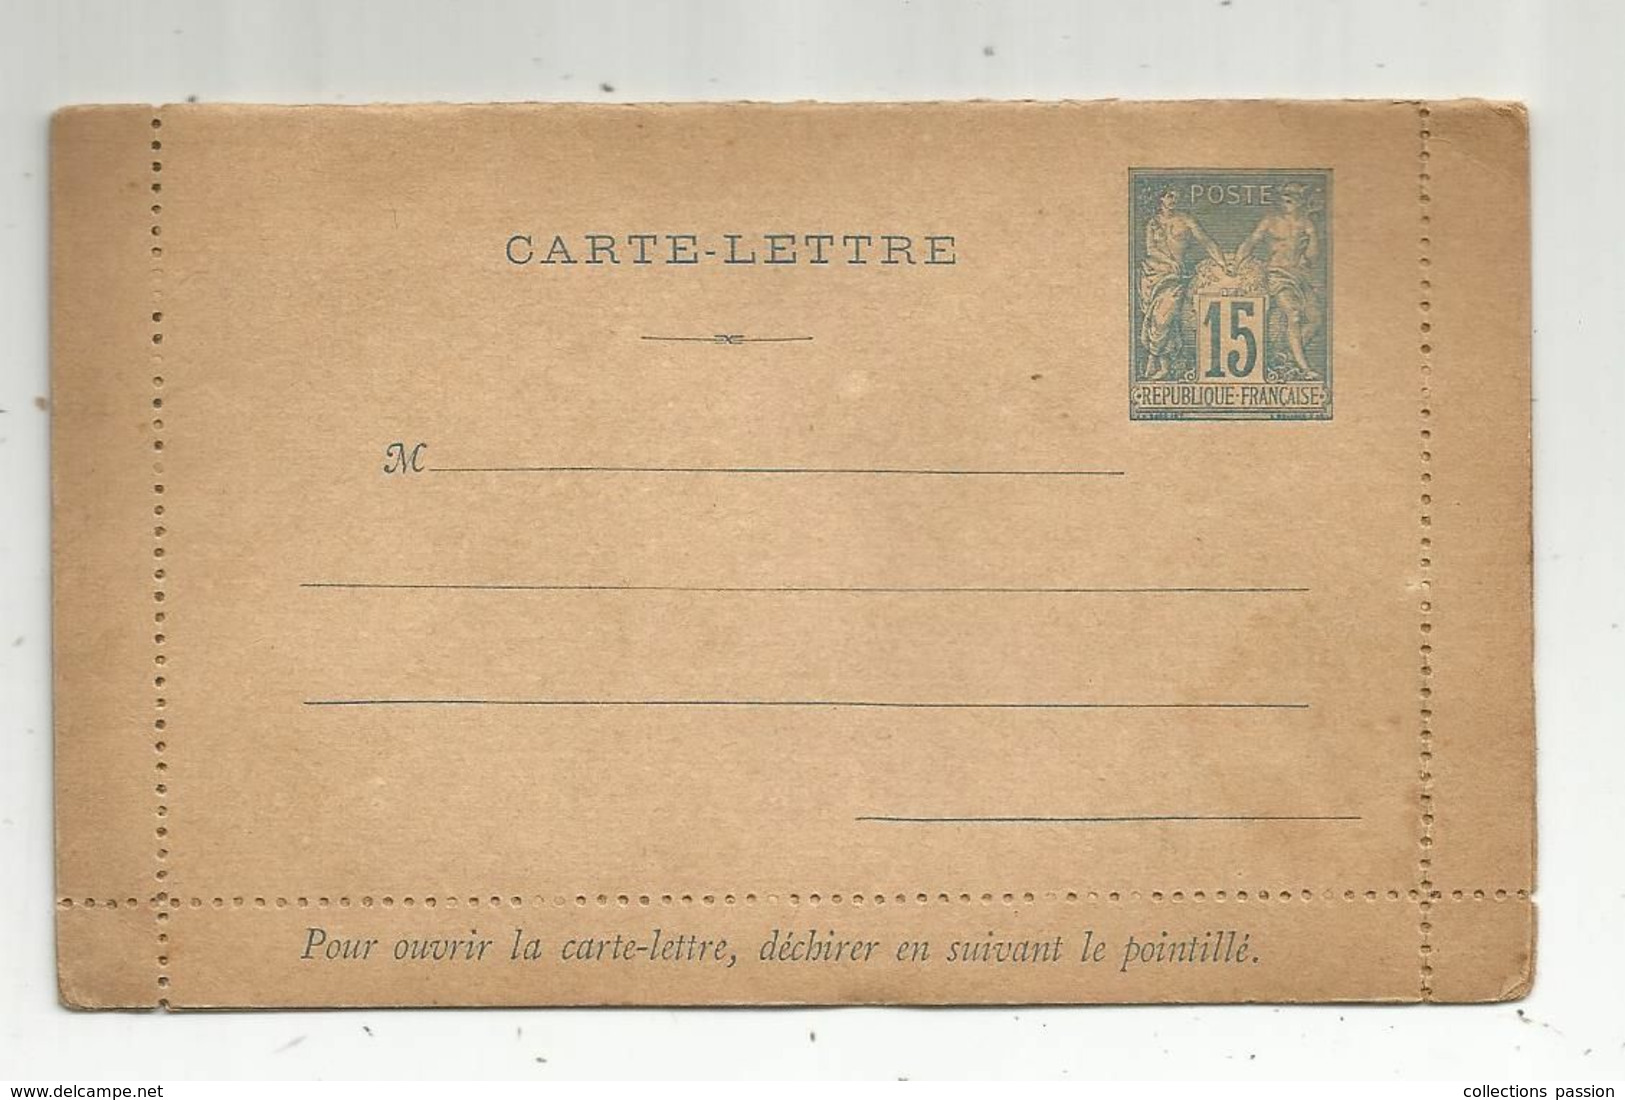 CARTE - LETTRE ,15 , République Française , Neuf - Cartes-lettres